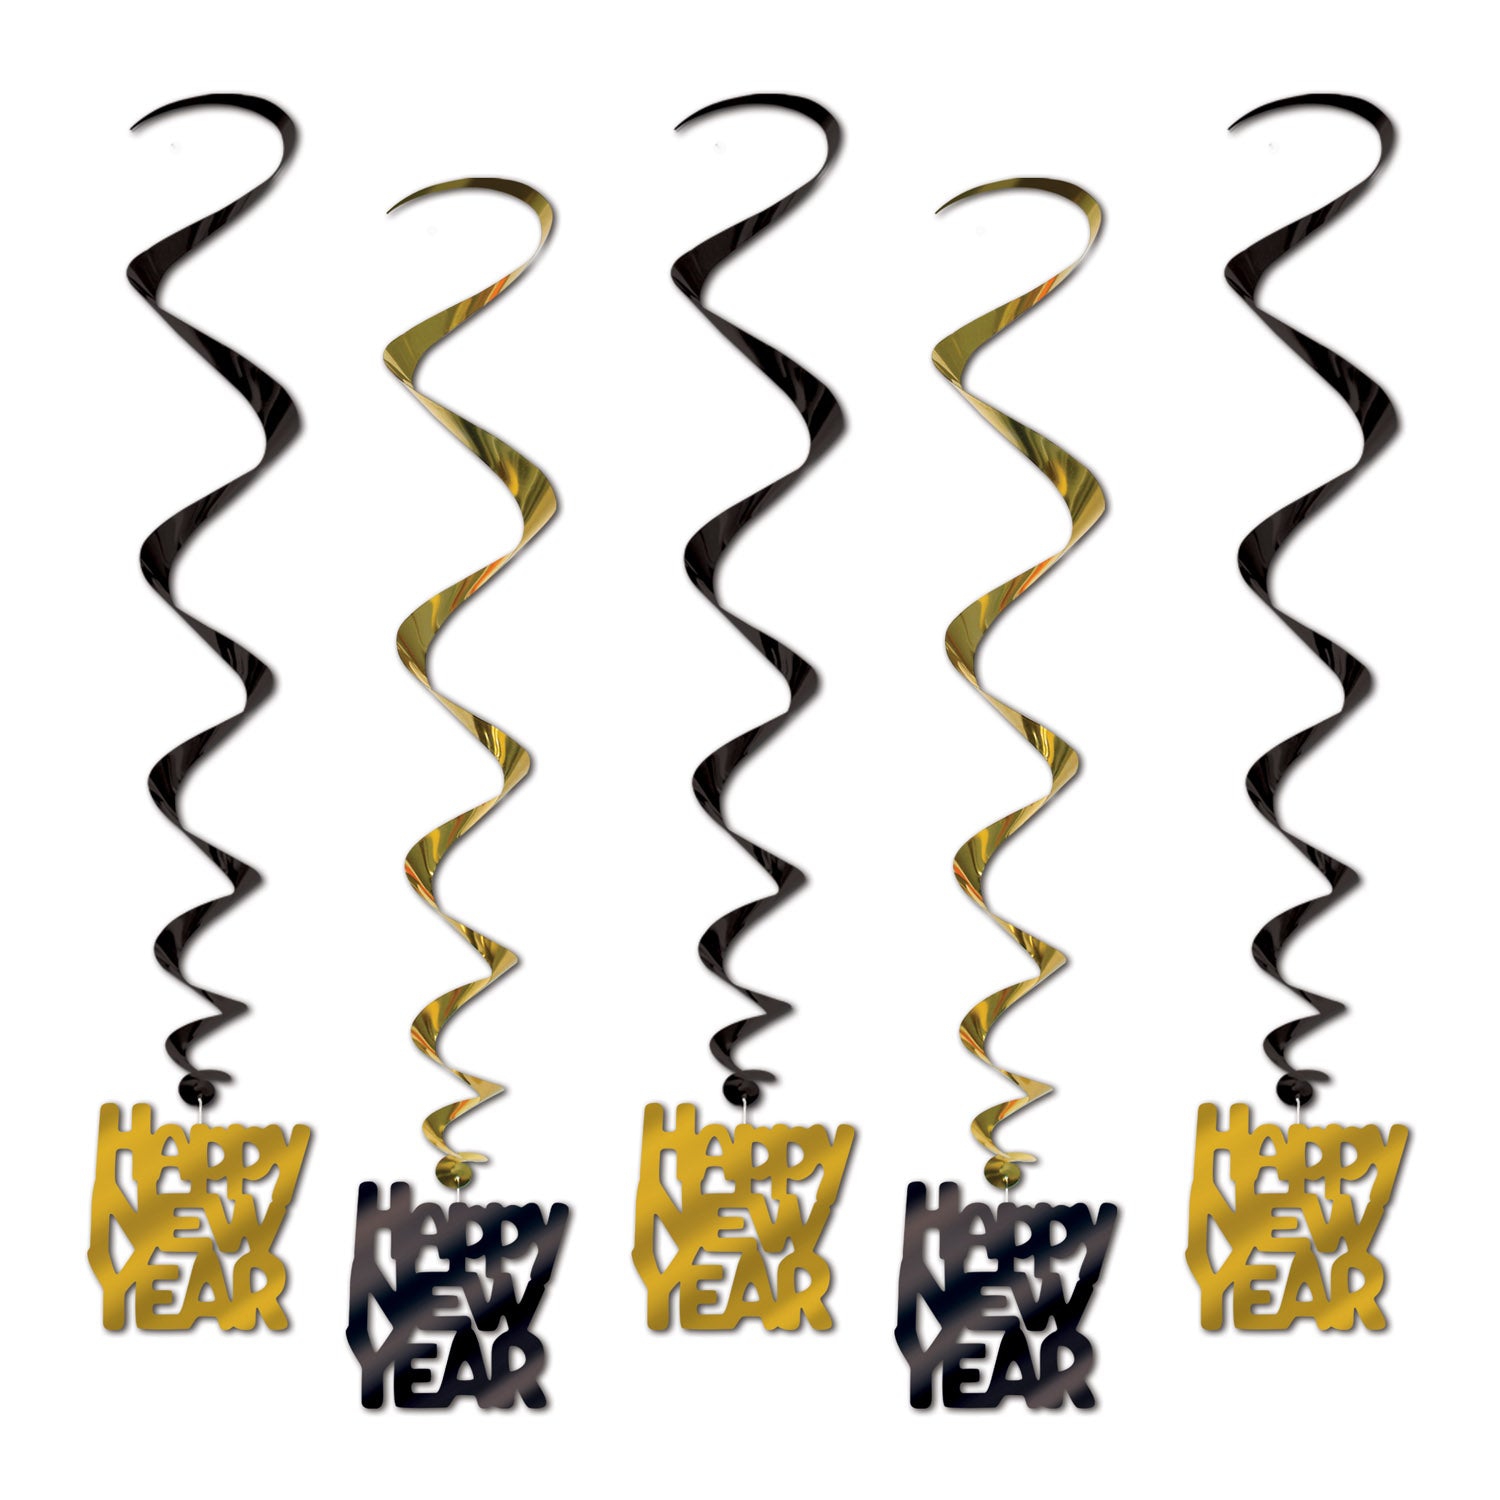 Hängedekoration "Happy New Year" 5er Set, Gold/Schwarz